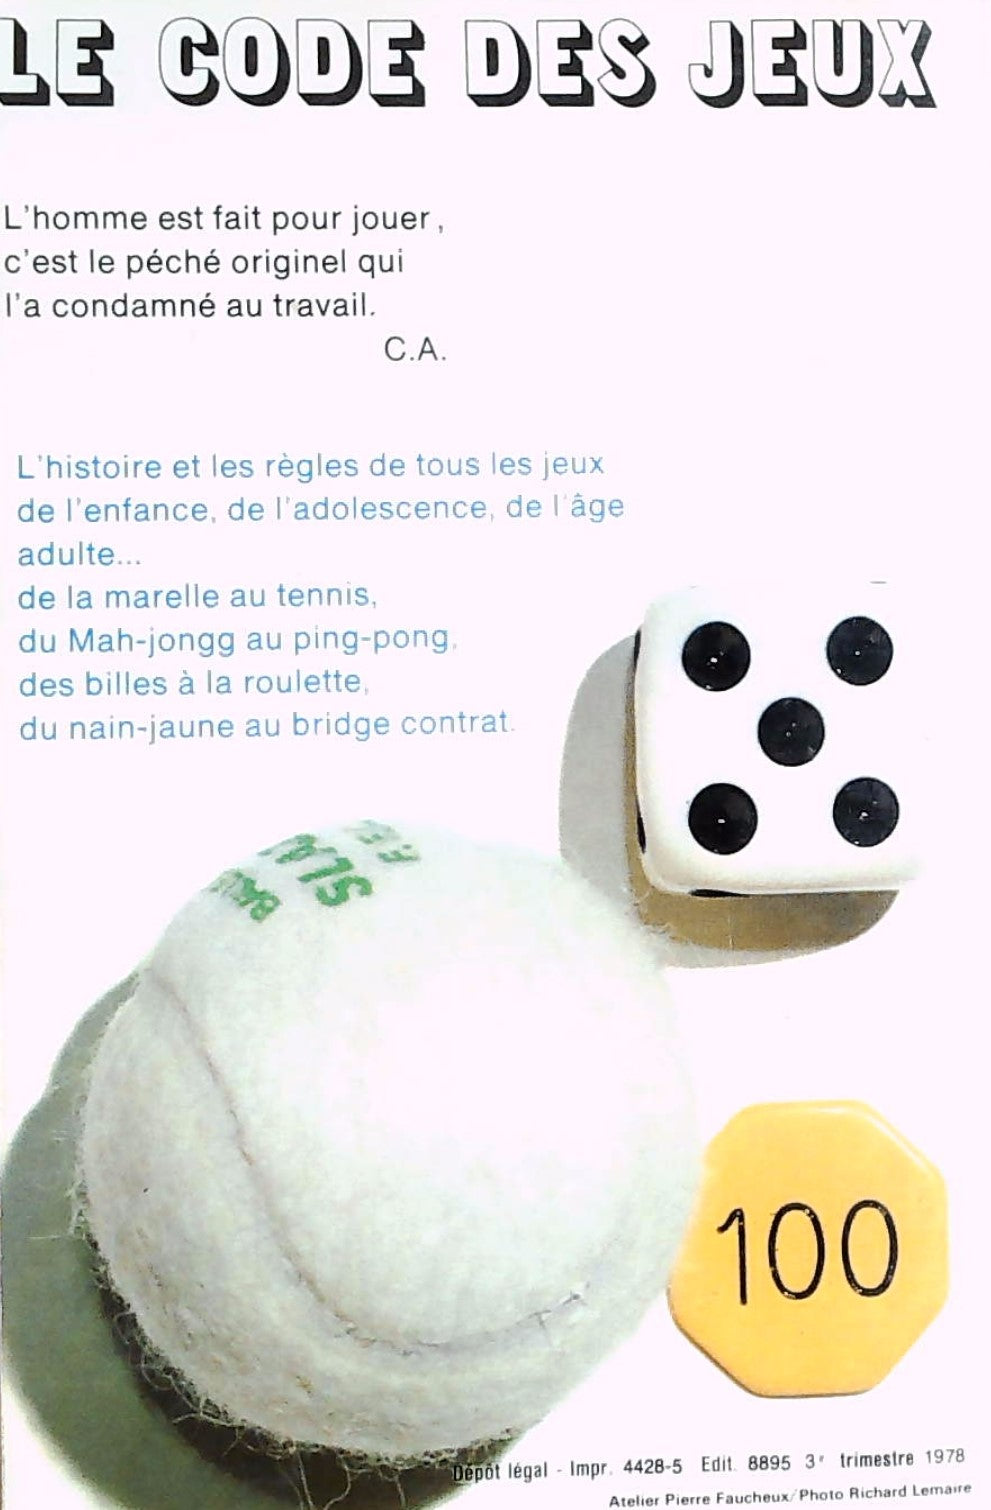 Le code des jeux (Claude Aveline)